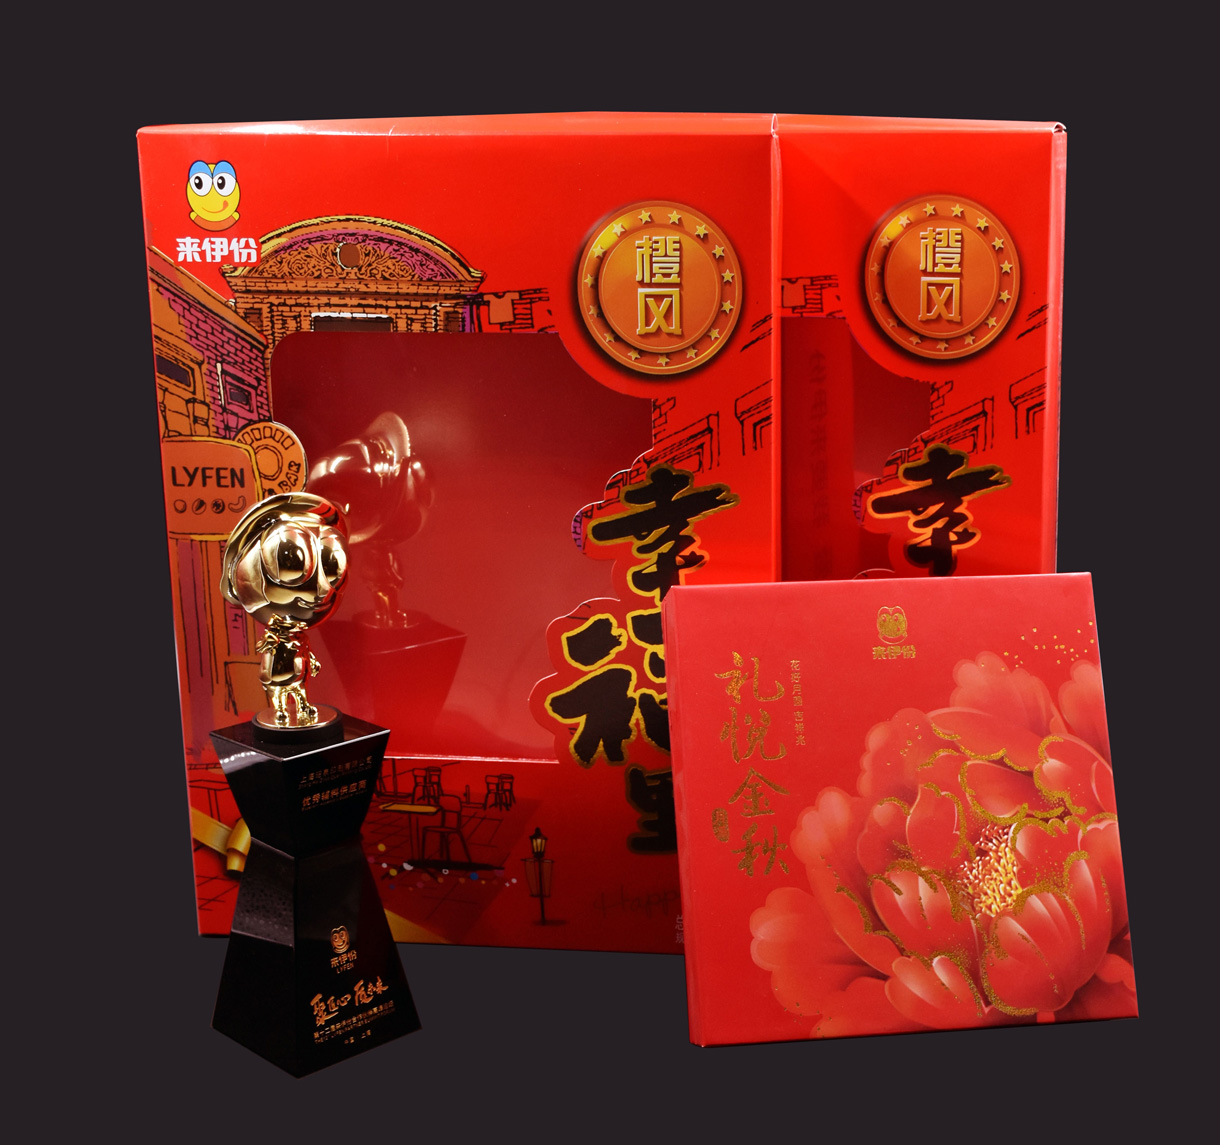 上海昭泉印刷有限公司-中国上海国际包装展展览会